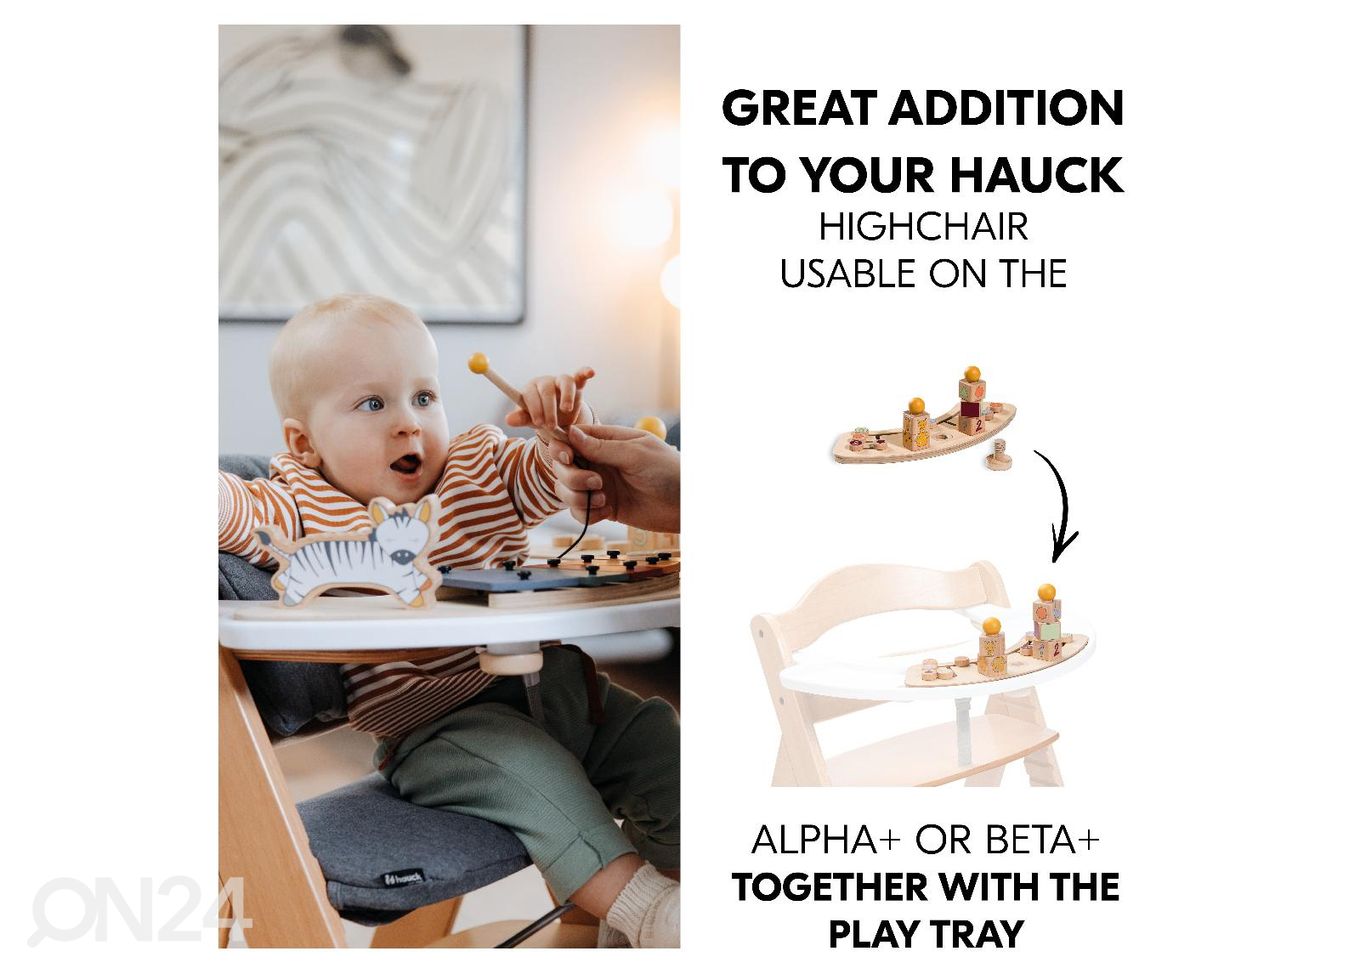 Игрушка для подноса детского стульчика Hauck Play Сортировочная игра Жираф увеличить